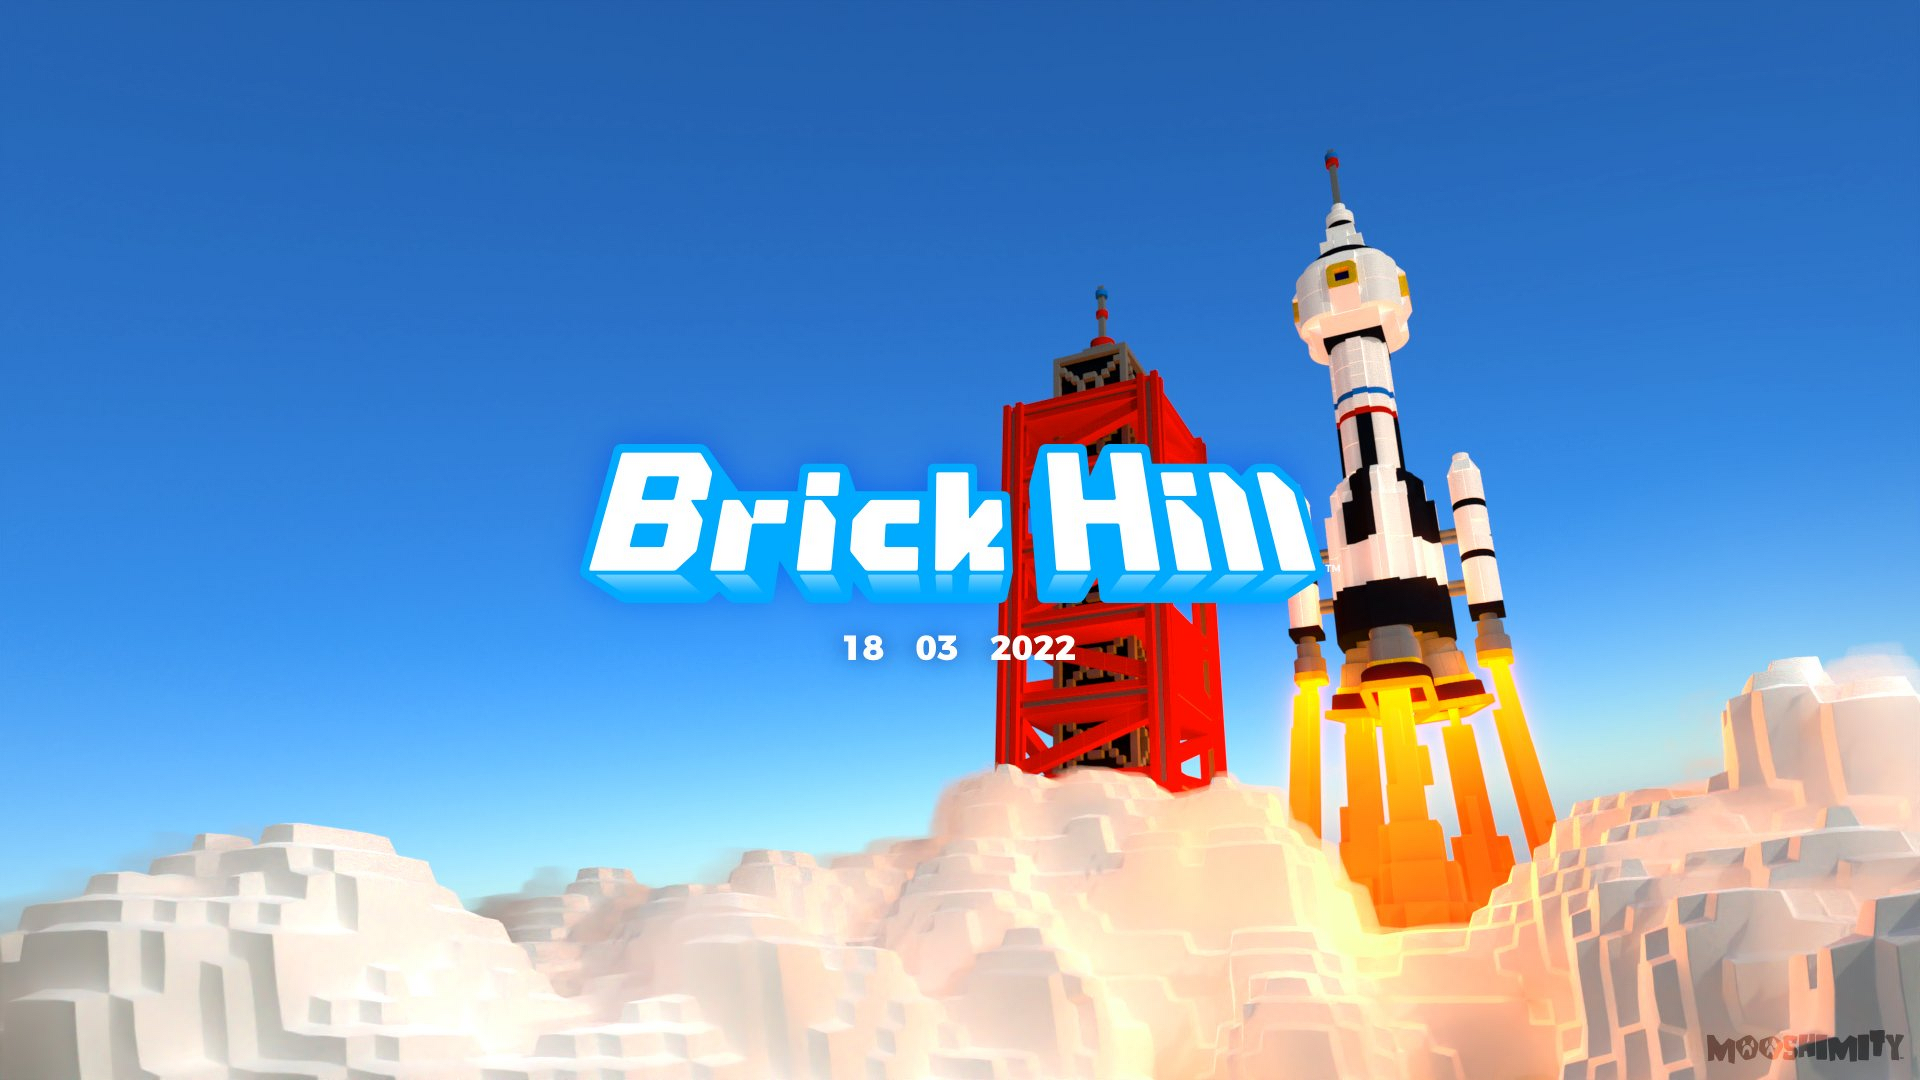 Brick Hill (@hillofbricks) / X